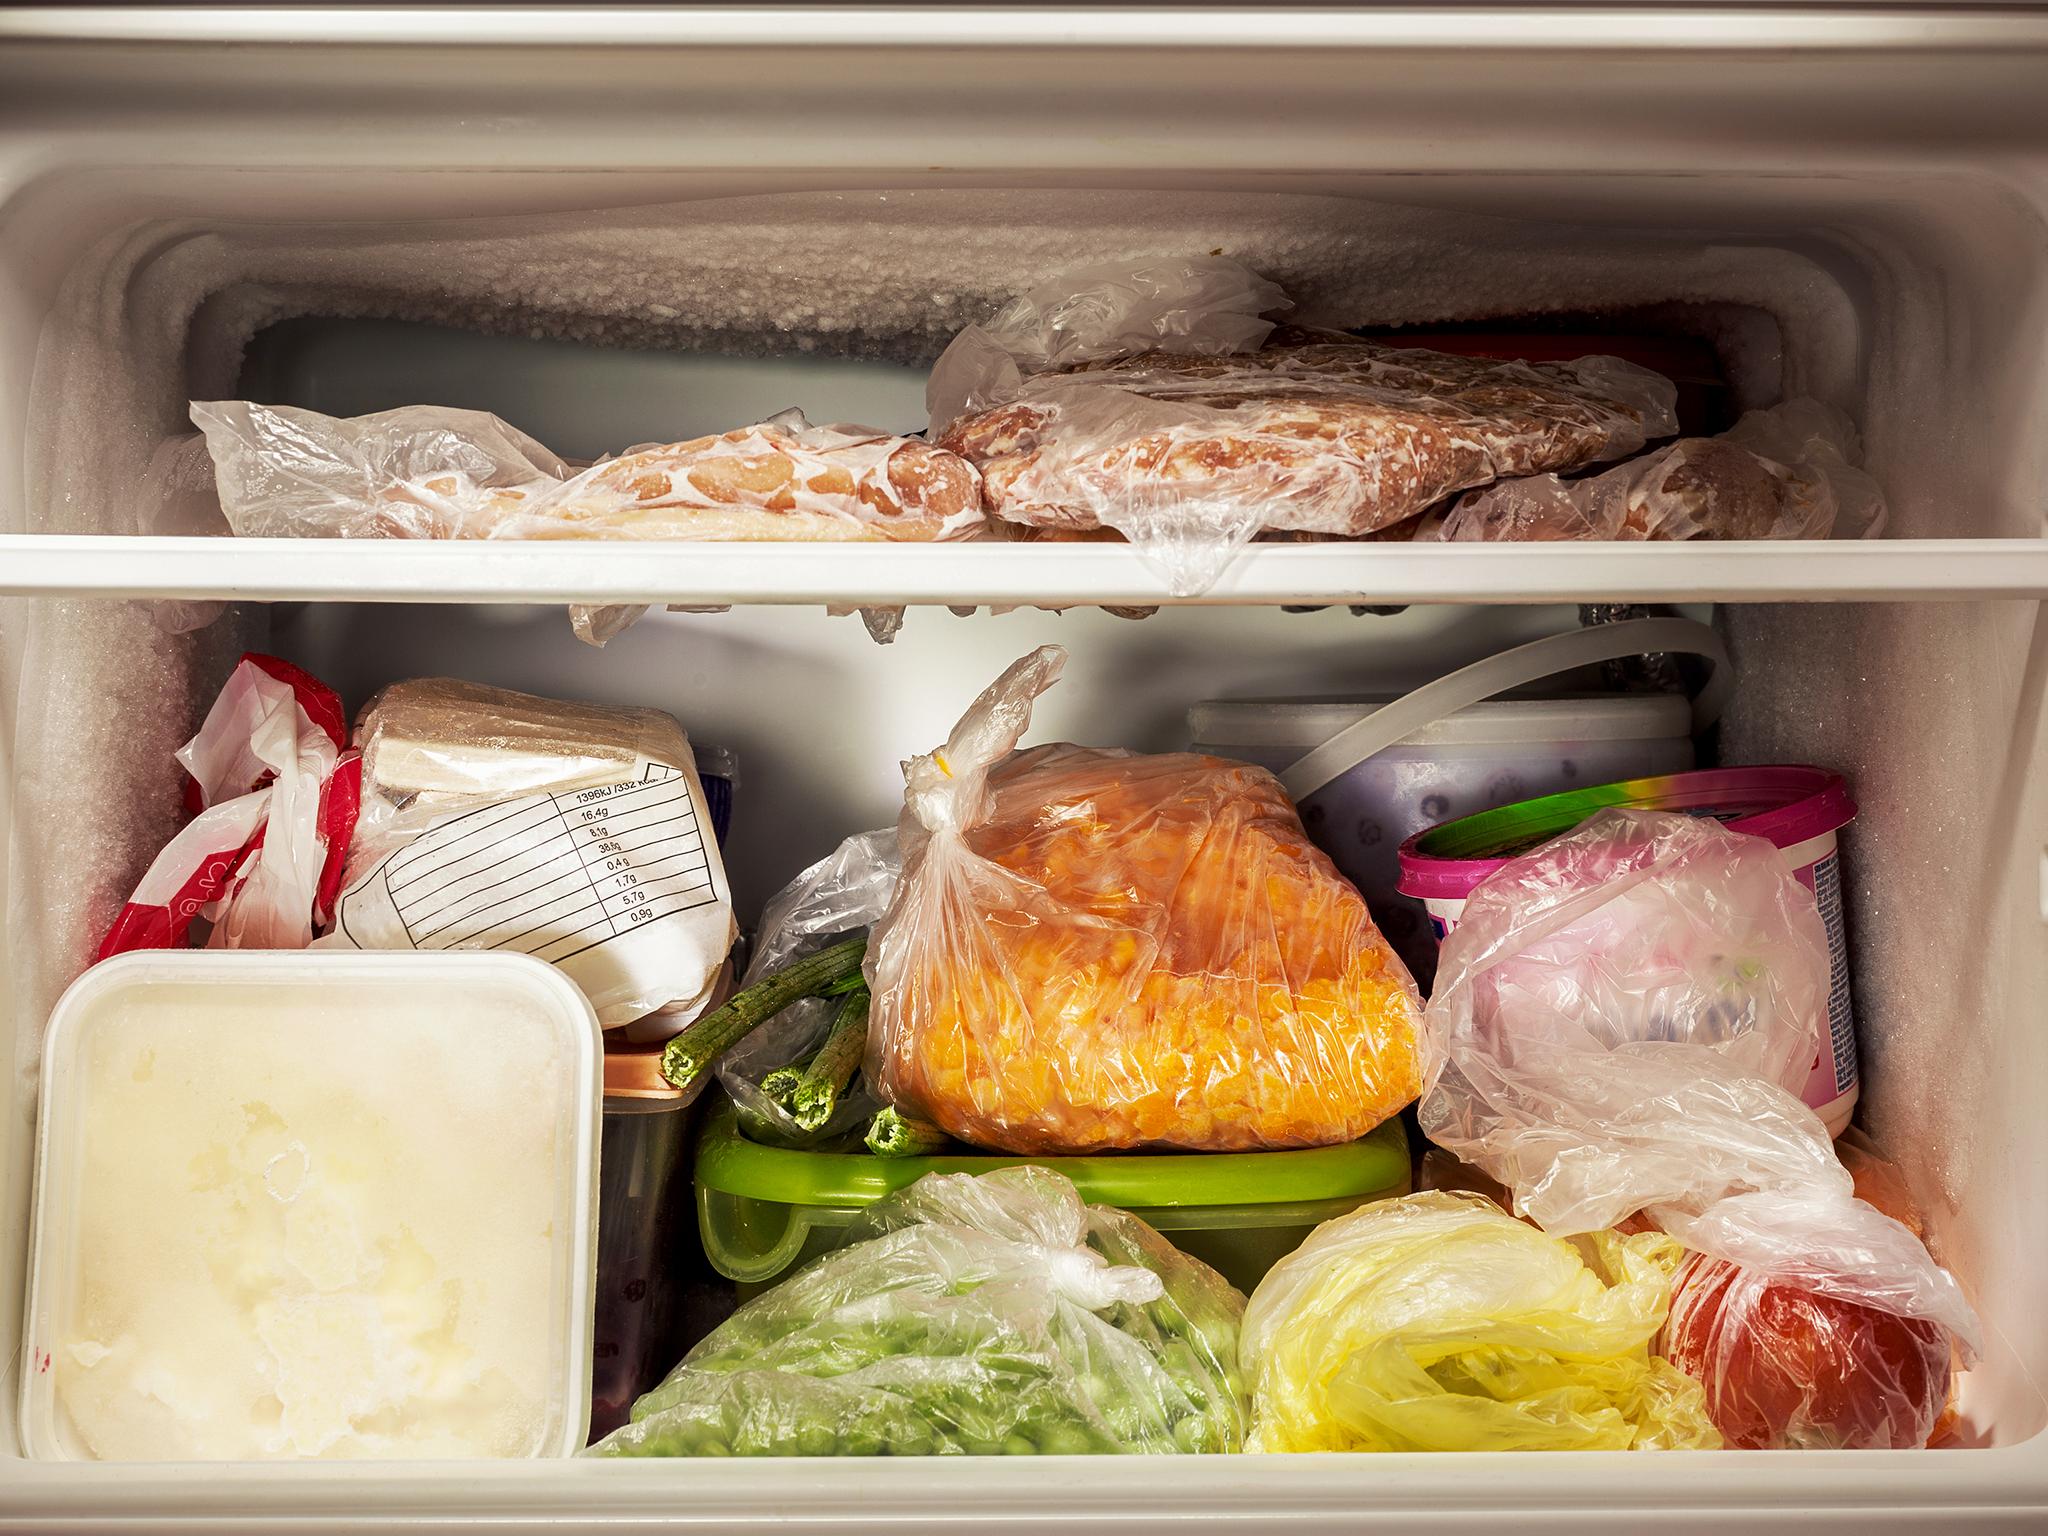 Выбор холодильника: виды морозильных камер